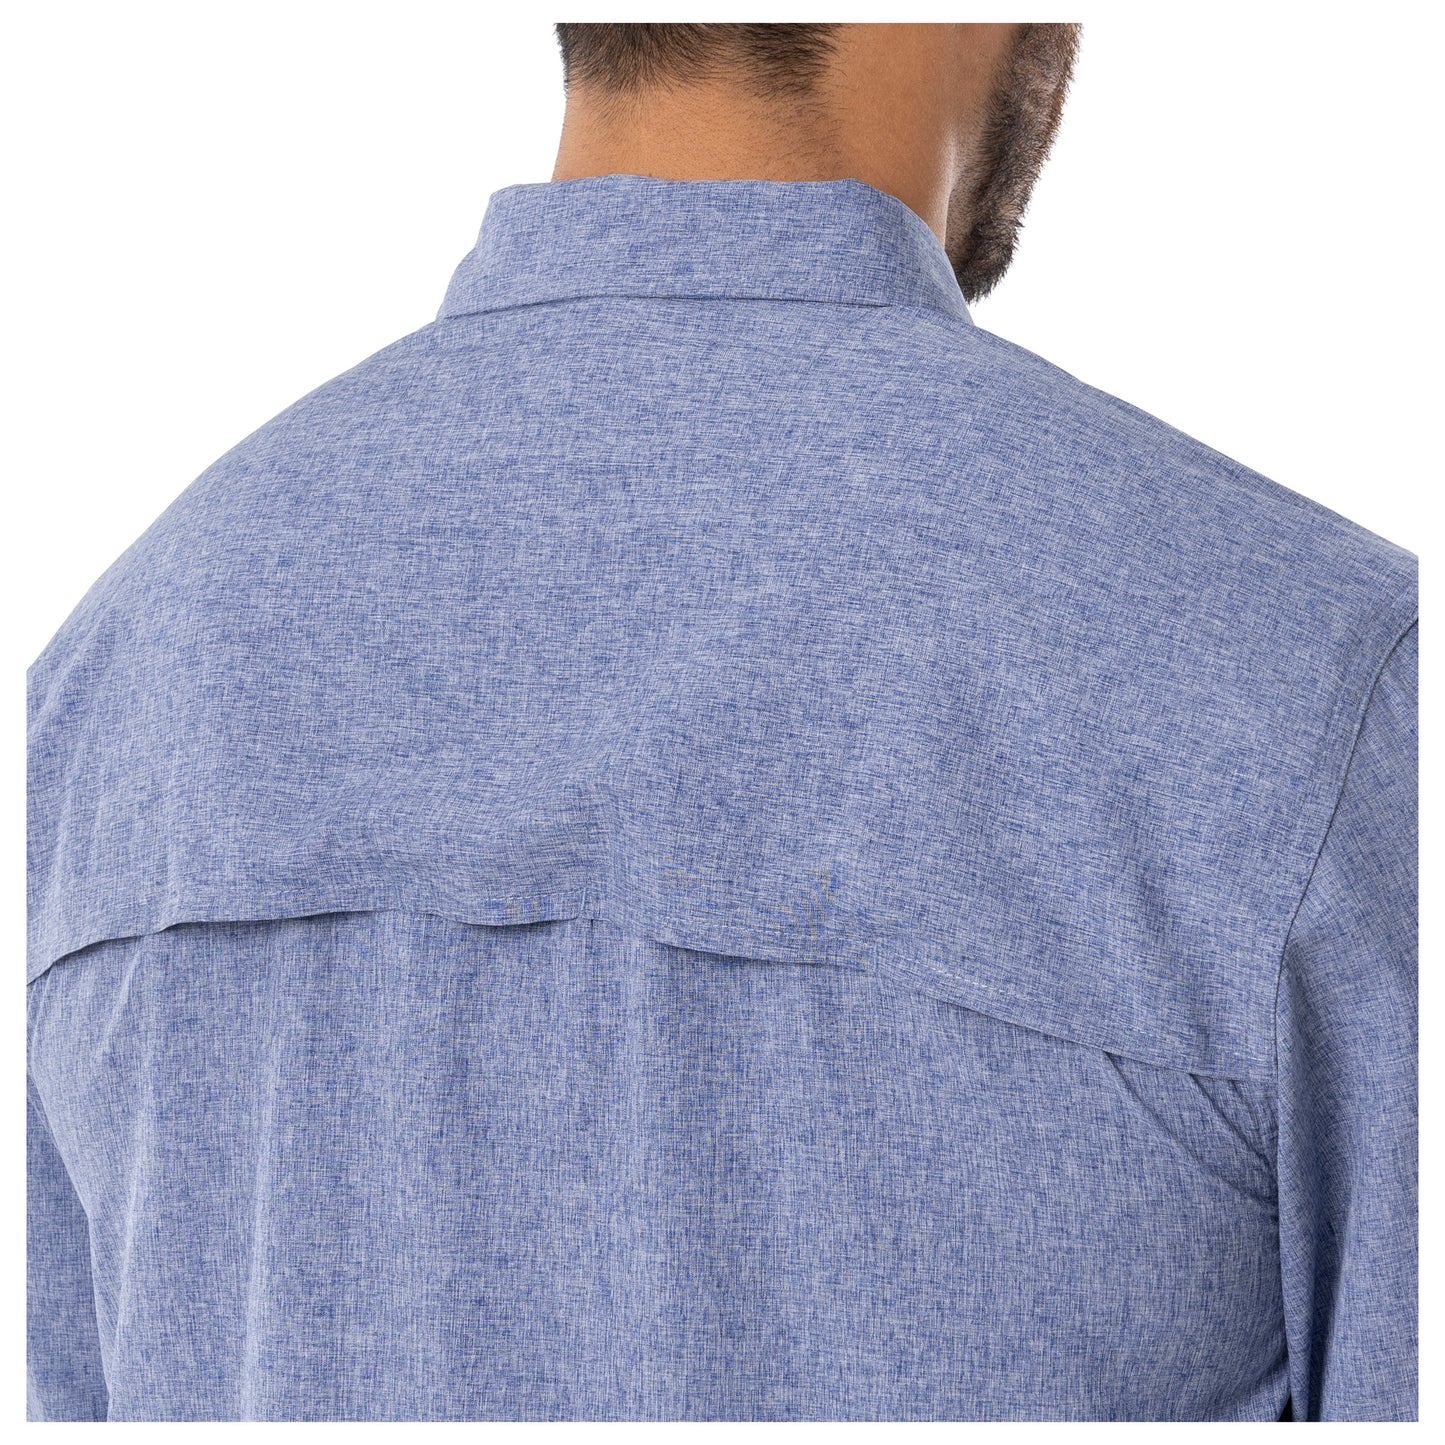 Guy Harvey By AFTCO Women's Long Sleeve Button Up Fishing Shirt XL Aqua  Blue